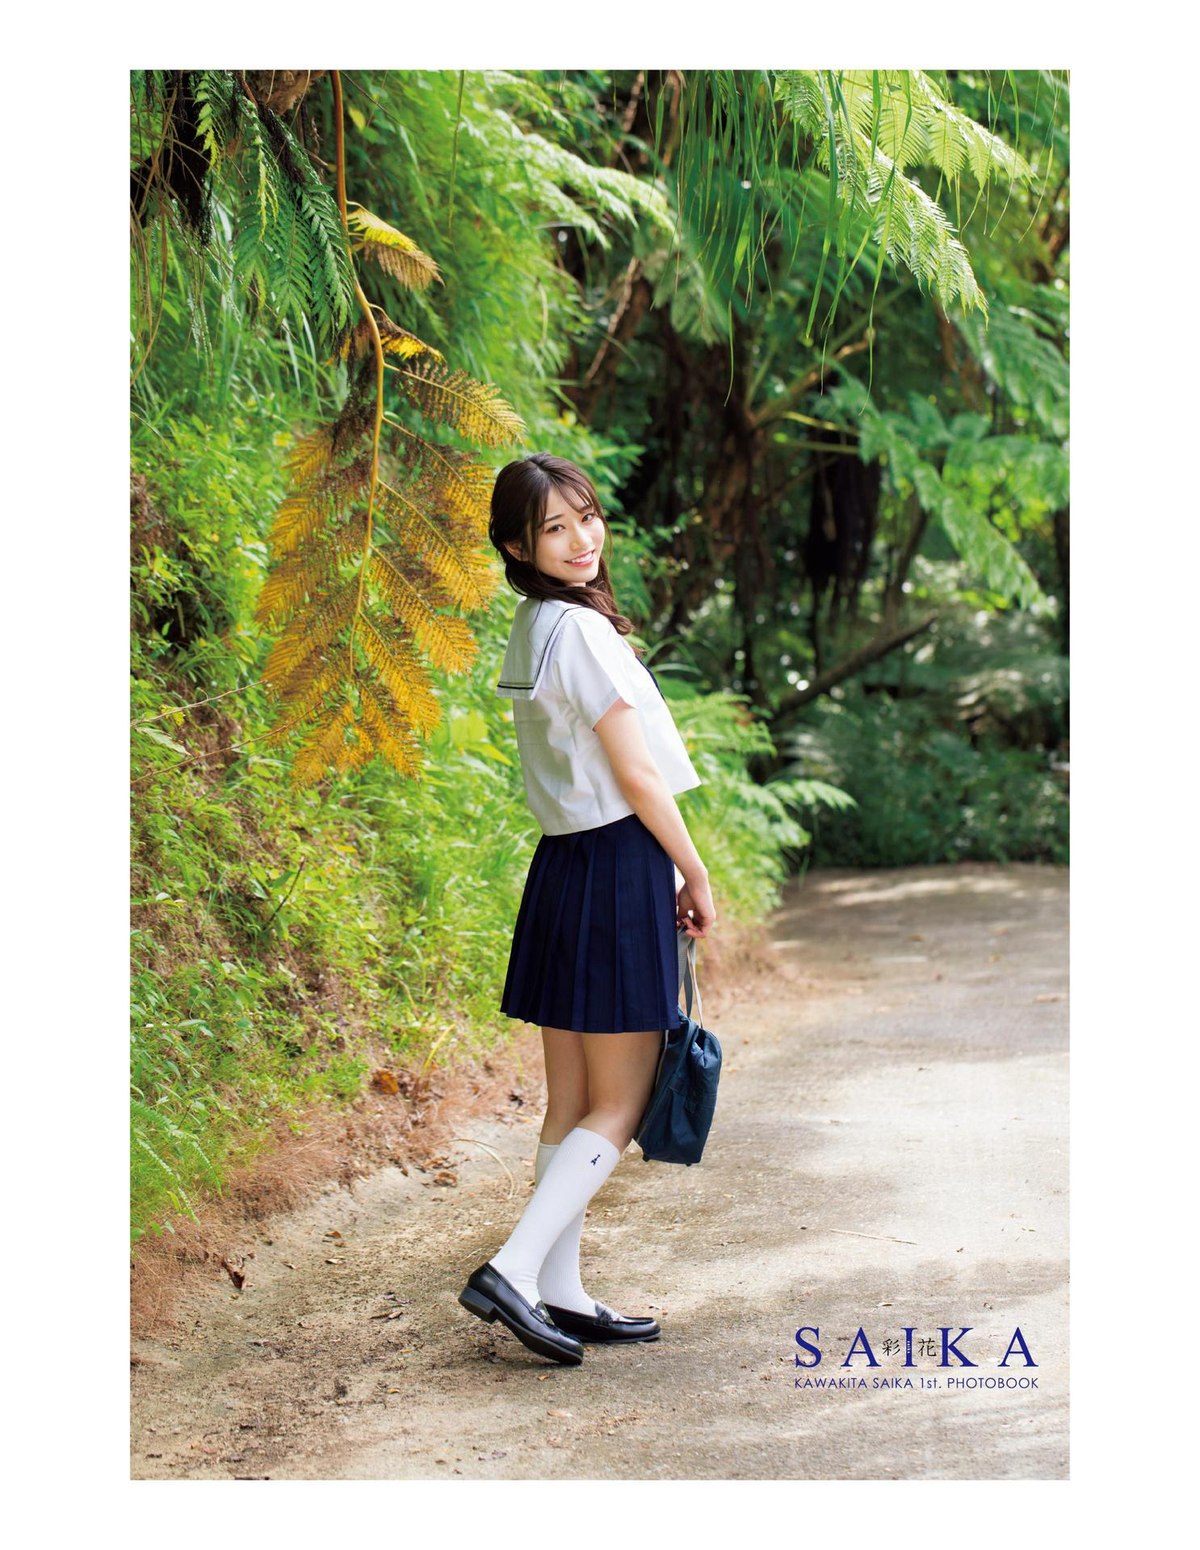 Photobook 2022 04 02 Saika Kawakita 河北彩花 1st Photobook SAIKA A 0001 9759512941.jpg